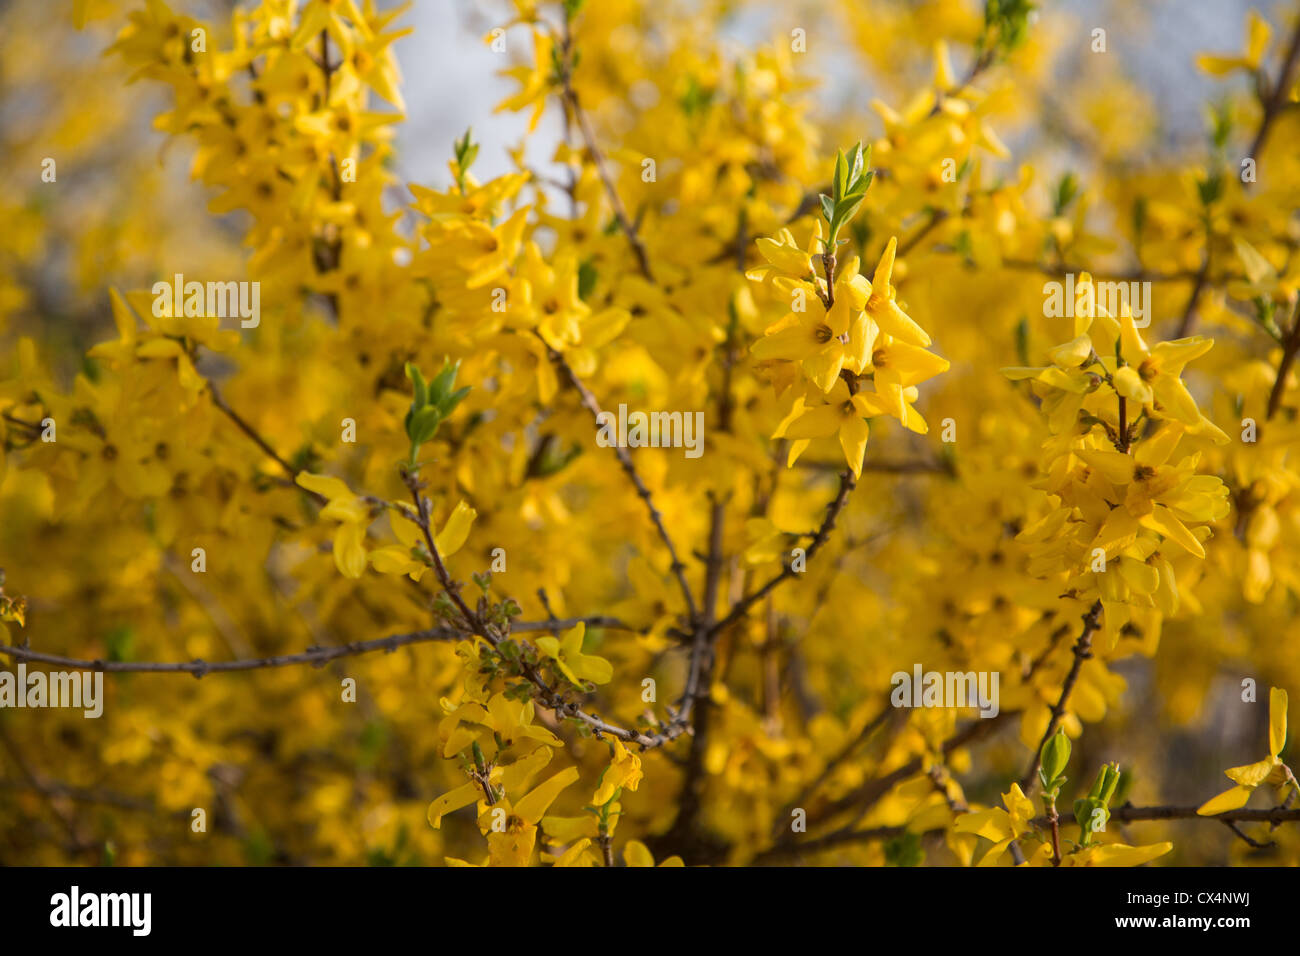 Yellow Forsythia flowers in full bloom near Seoul, Korea Stock Photo